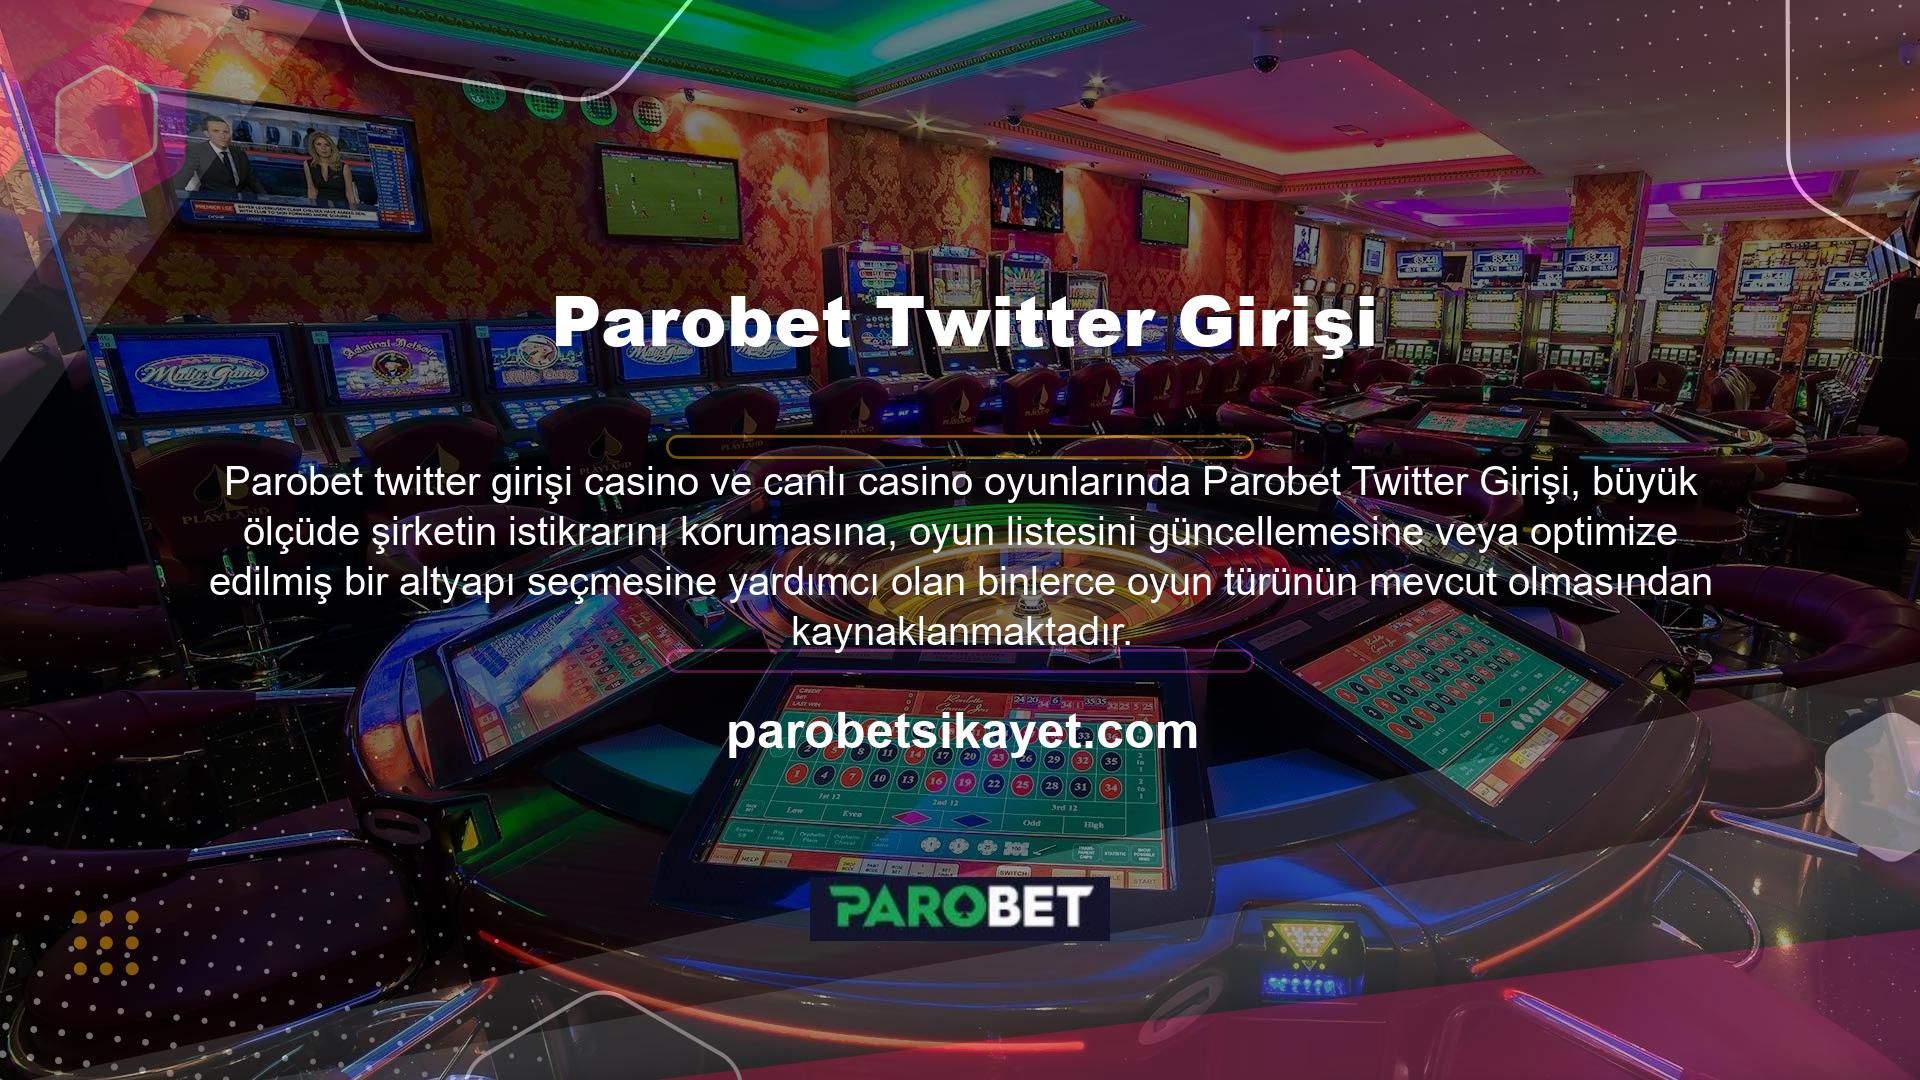 Türkiye'de online oynayamayanlar için de casino oyunlarında Türkçe seçeneklerini artıracak bir özellik geliştiriliyor